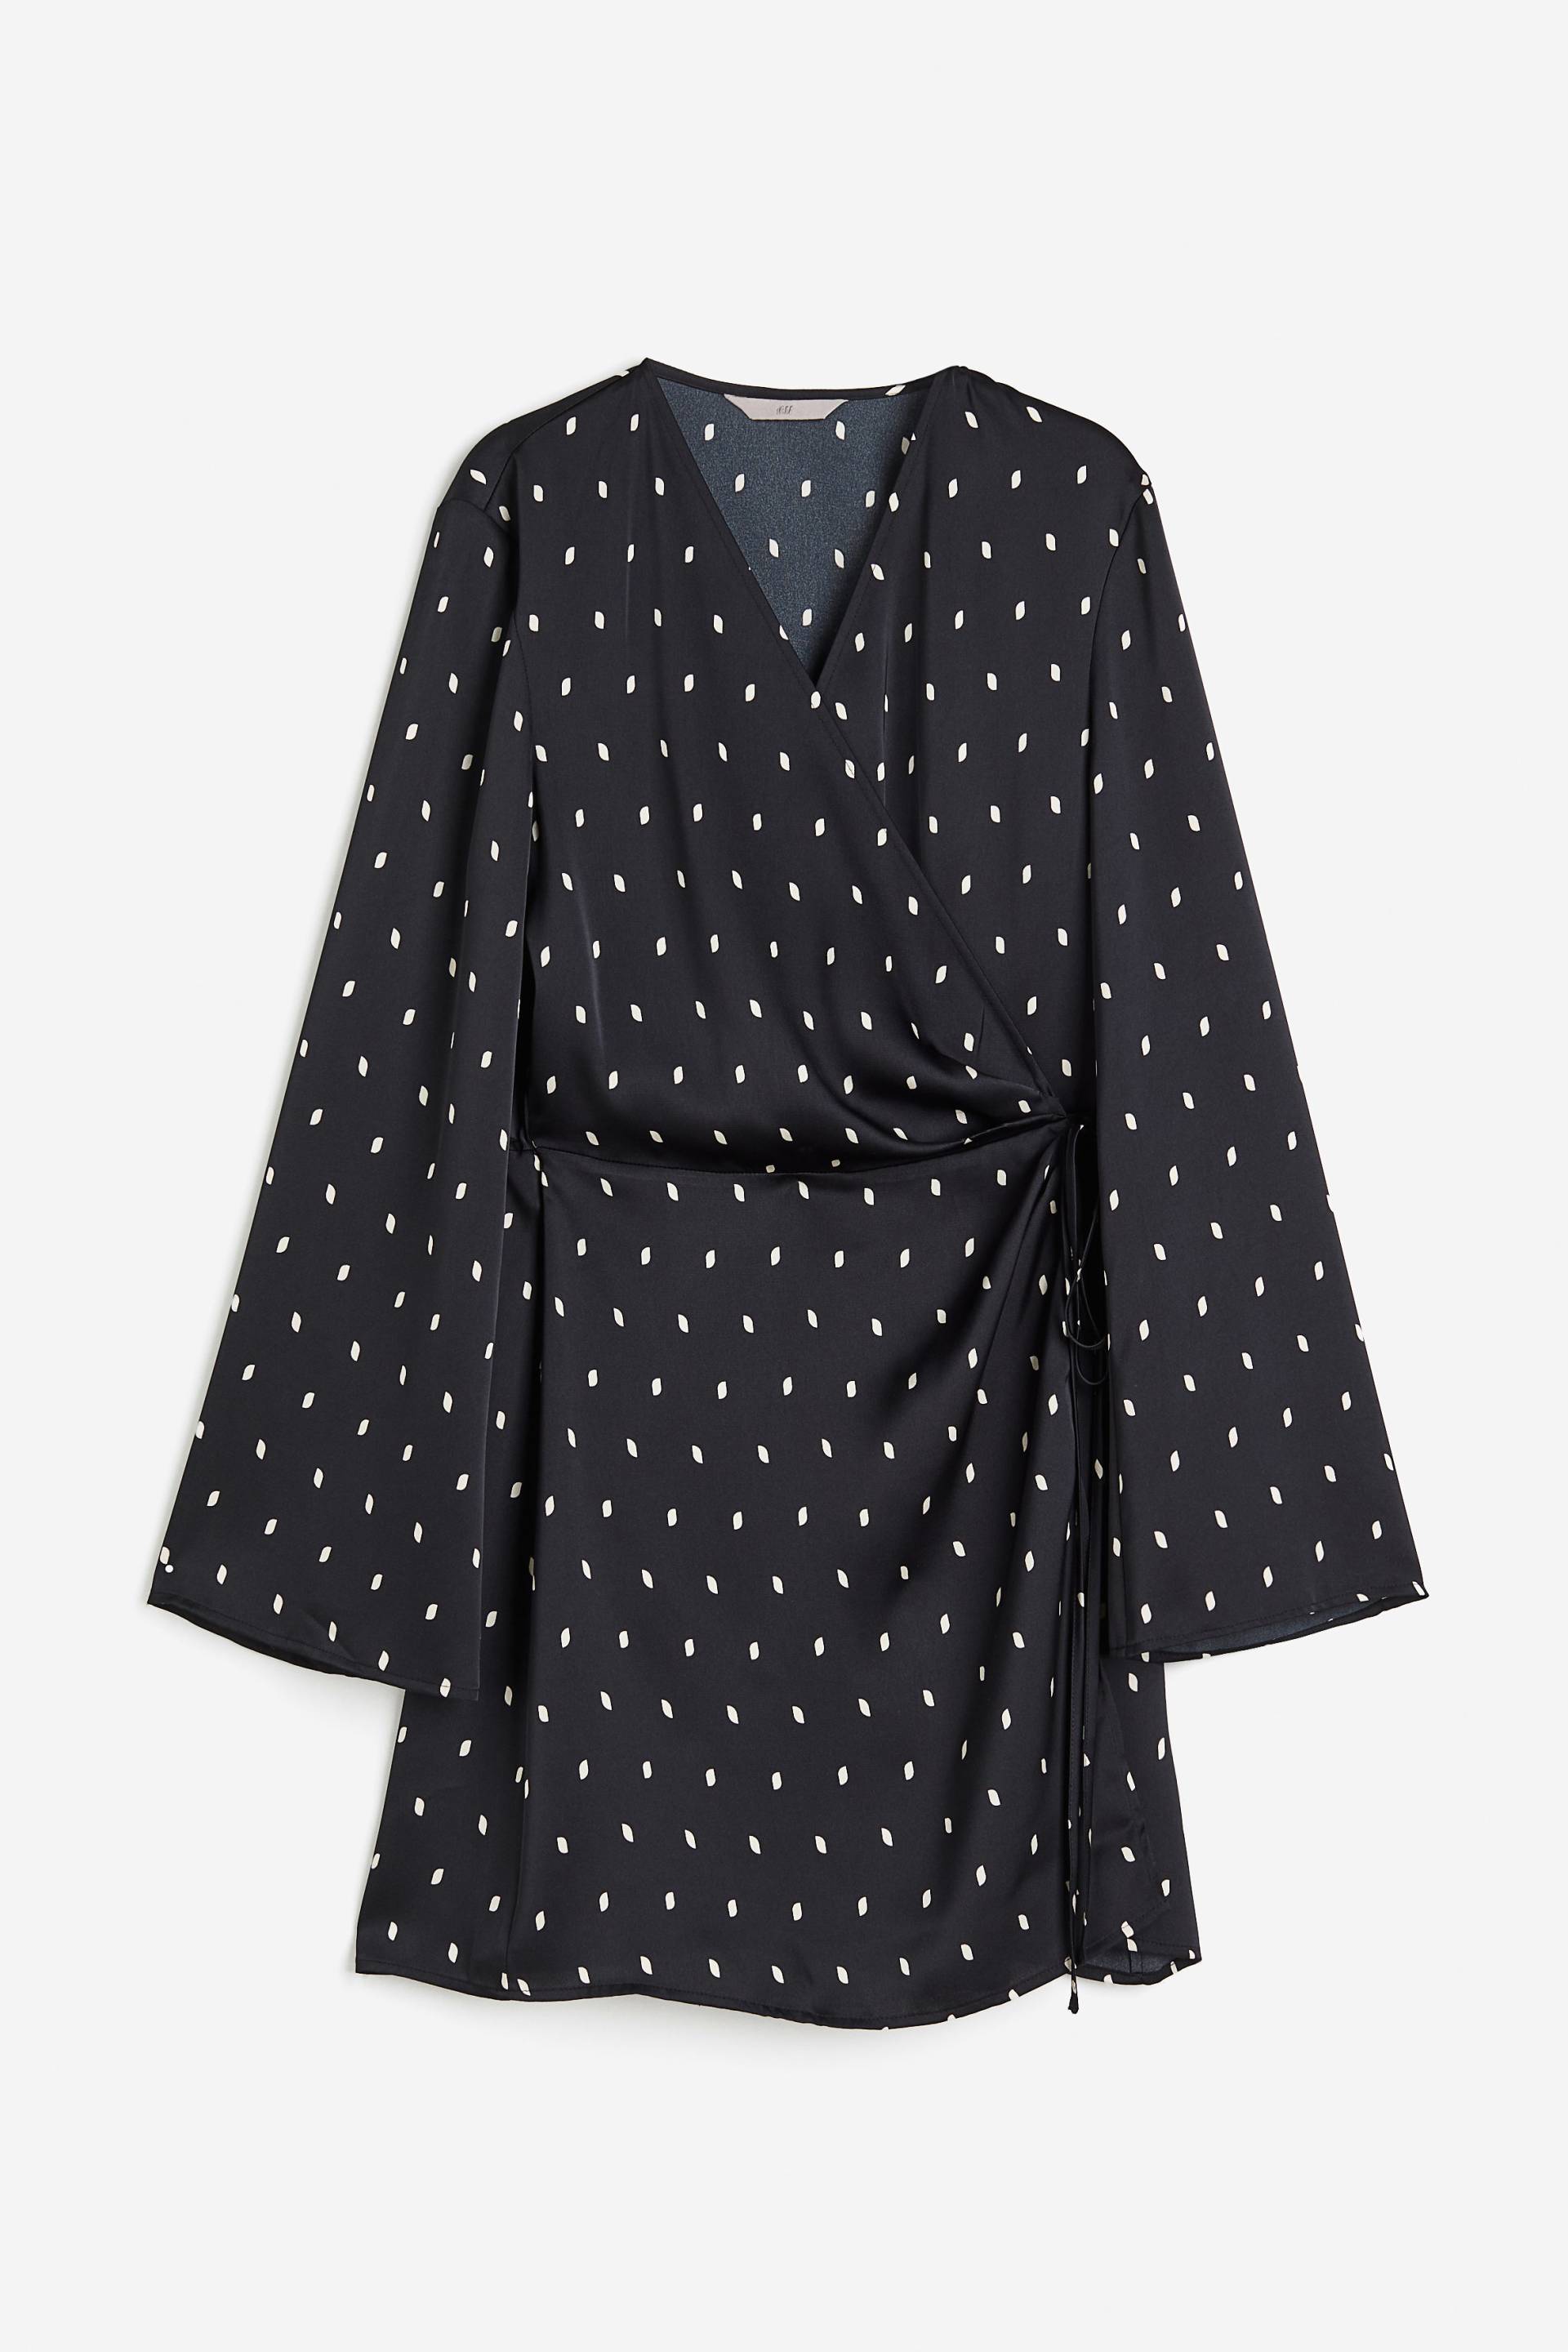 H&M Wickelkleid aus Satin Schwarz/Gepunktet, Alltagskleider in Größe XS. Farbe: Black/spotted von H&M